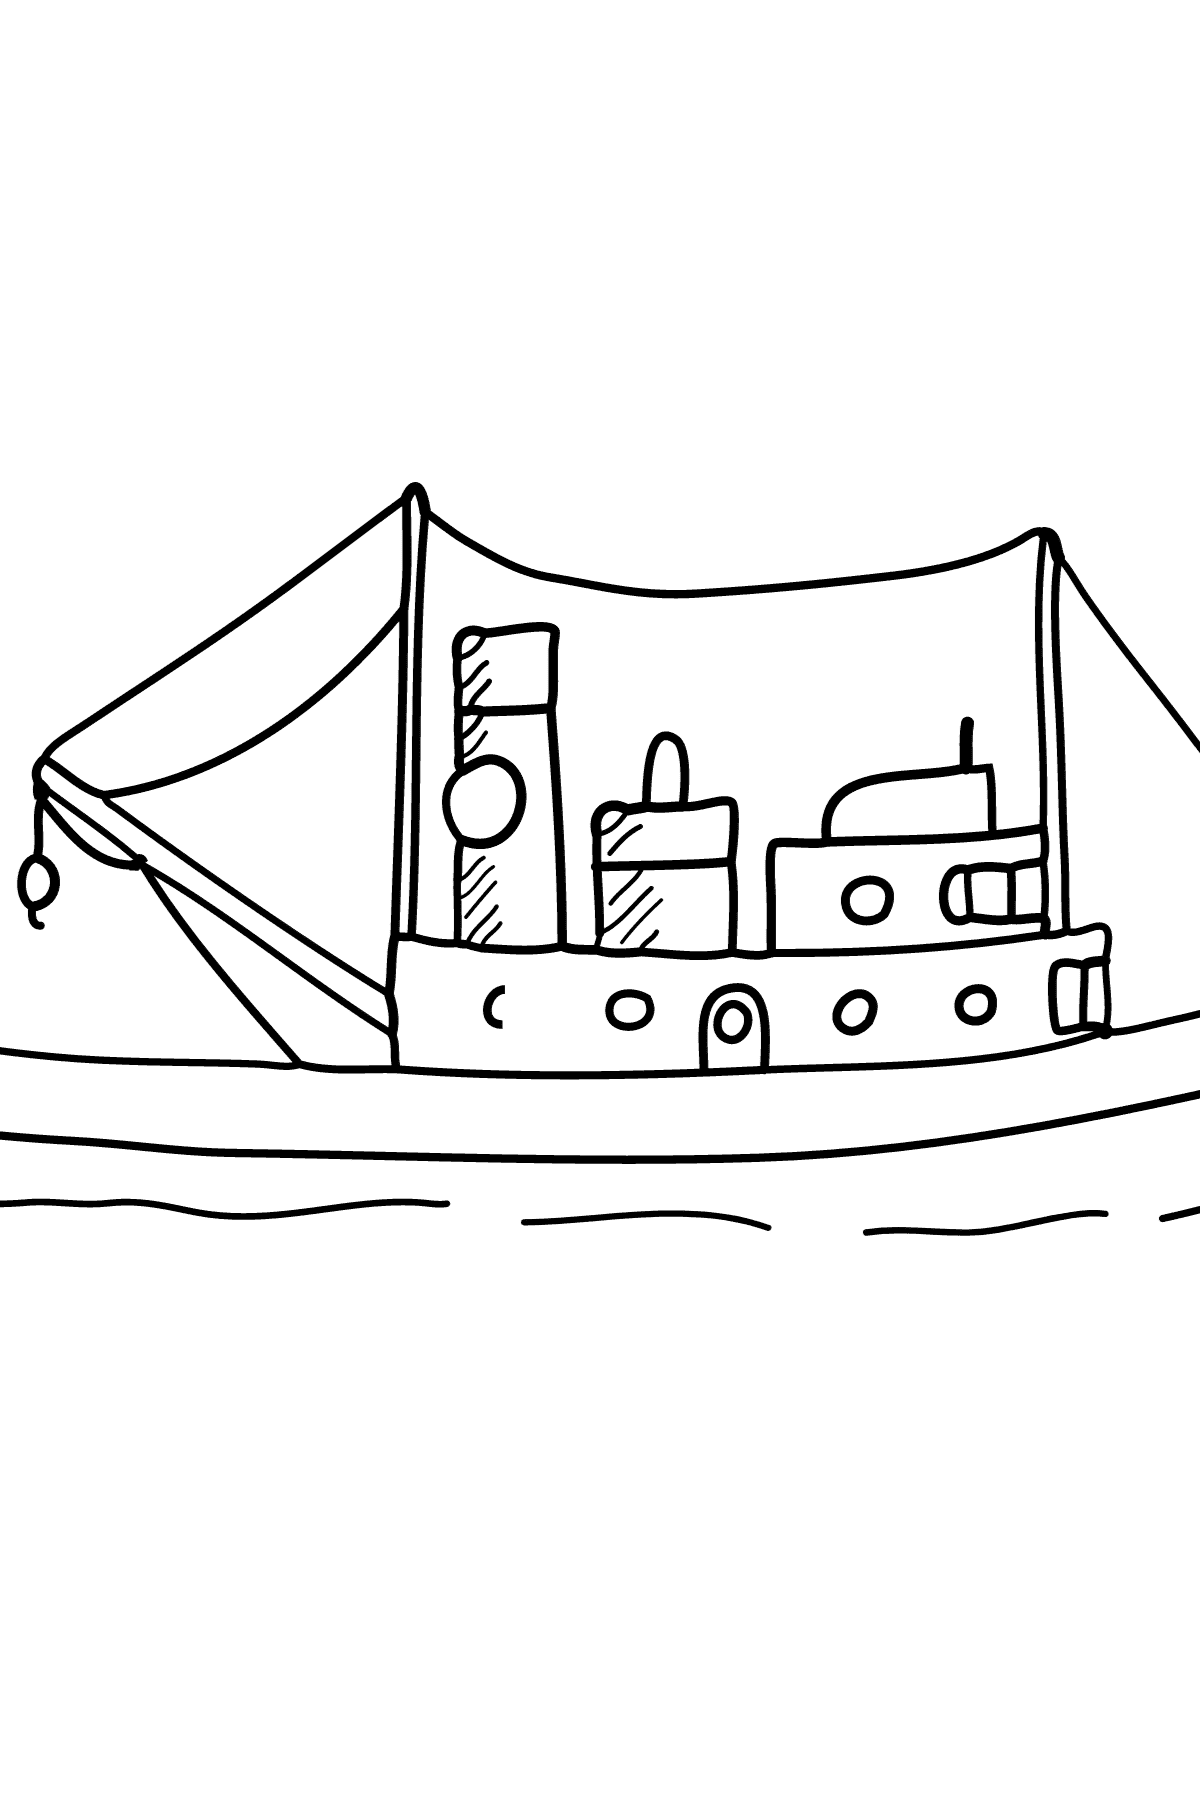 Navire à colorier - Une barge à cargaison sèche - Coloriages pour les Enfants